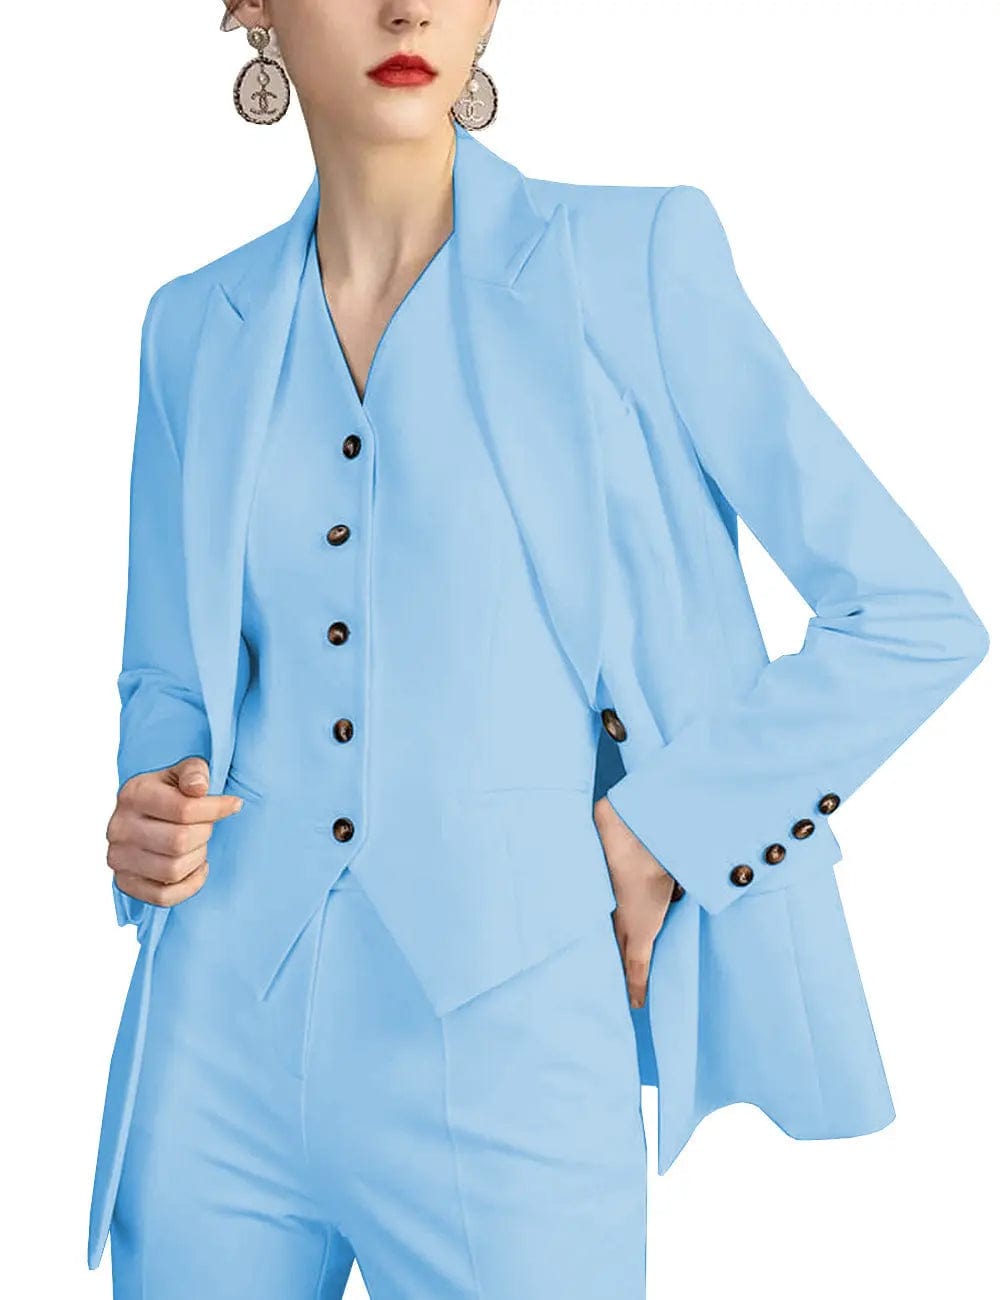 solovedress 3 Pieces Slim Fit Peak Lapel Suit (Blazer+vest+Pants)